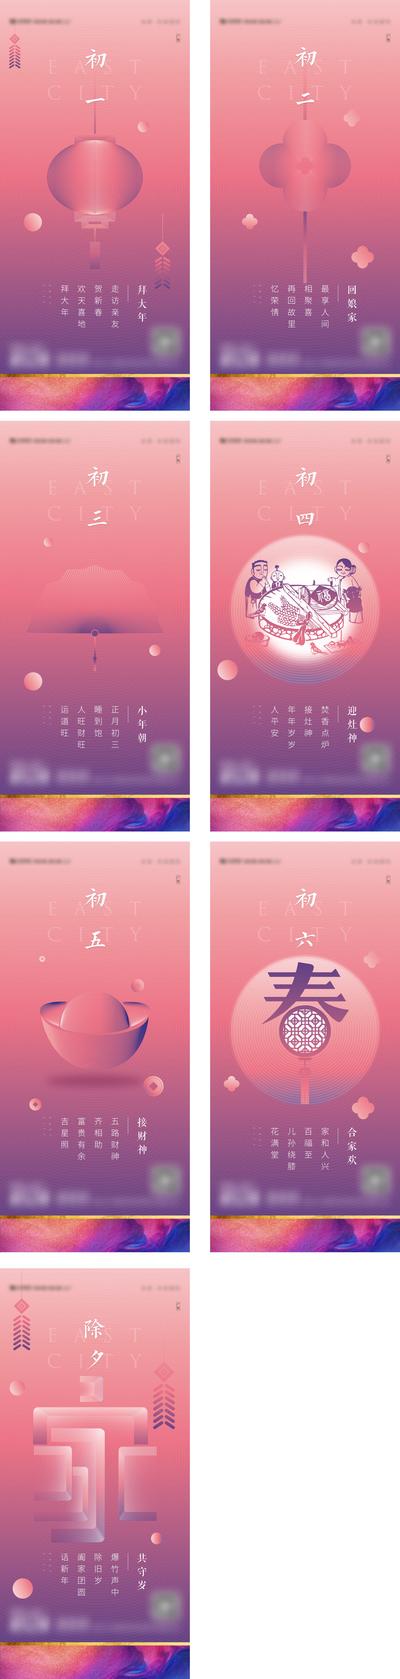 南门网 海报 中国传统节日 新年 除夕 年俗 唯美 系列  